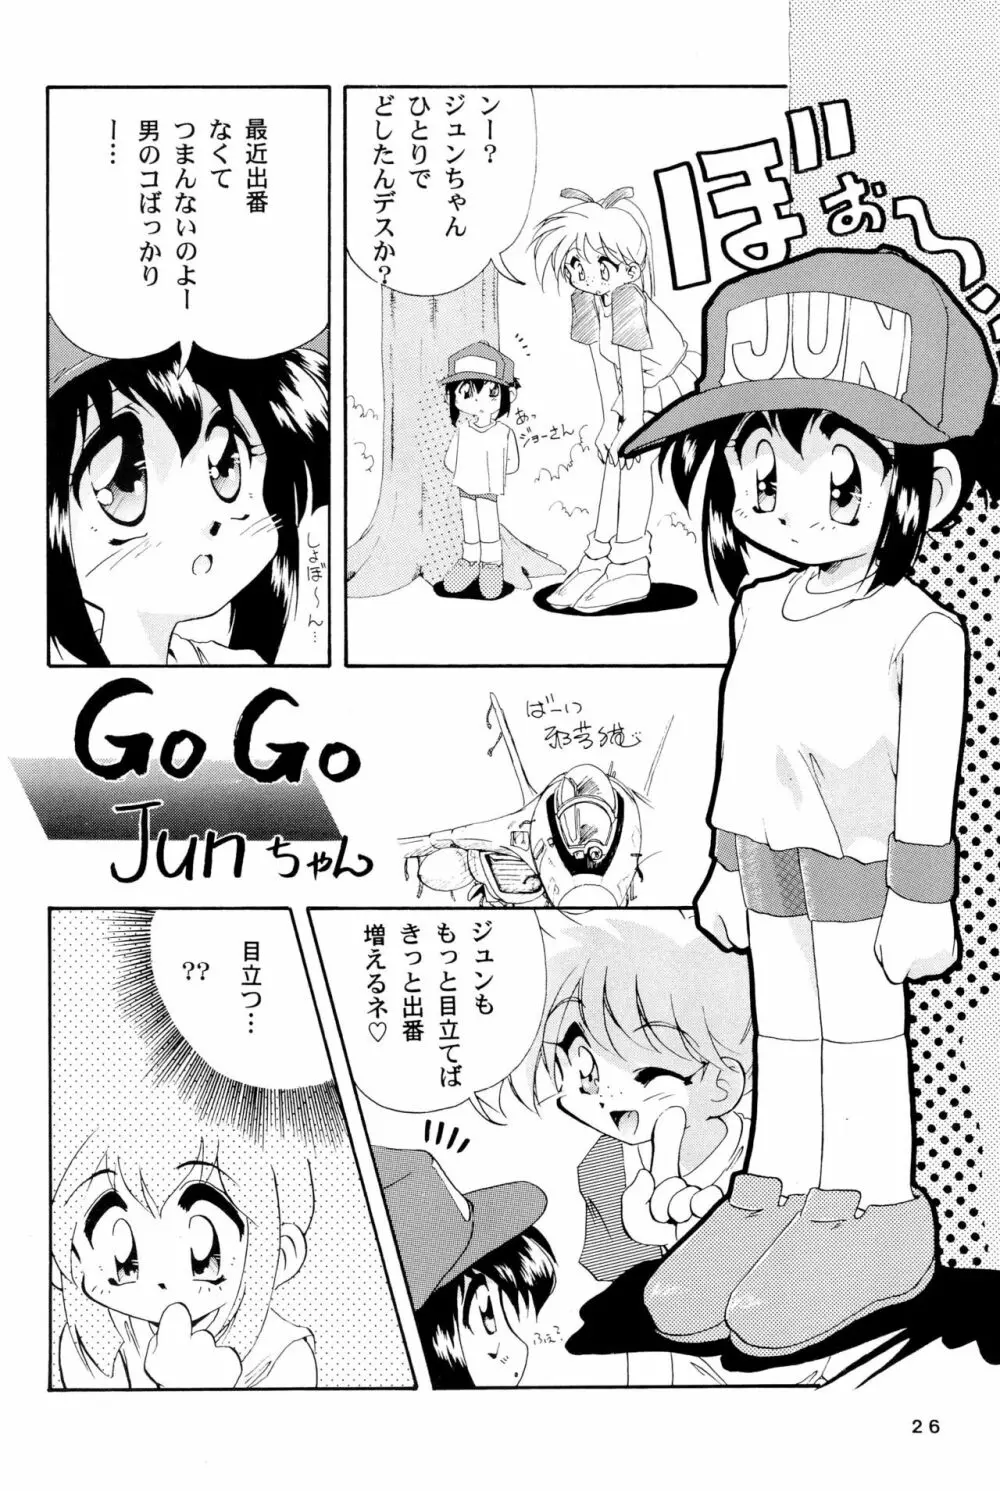 四駆遊戯 巻之弐 - page26